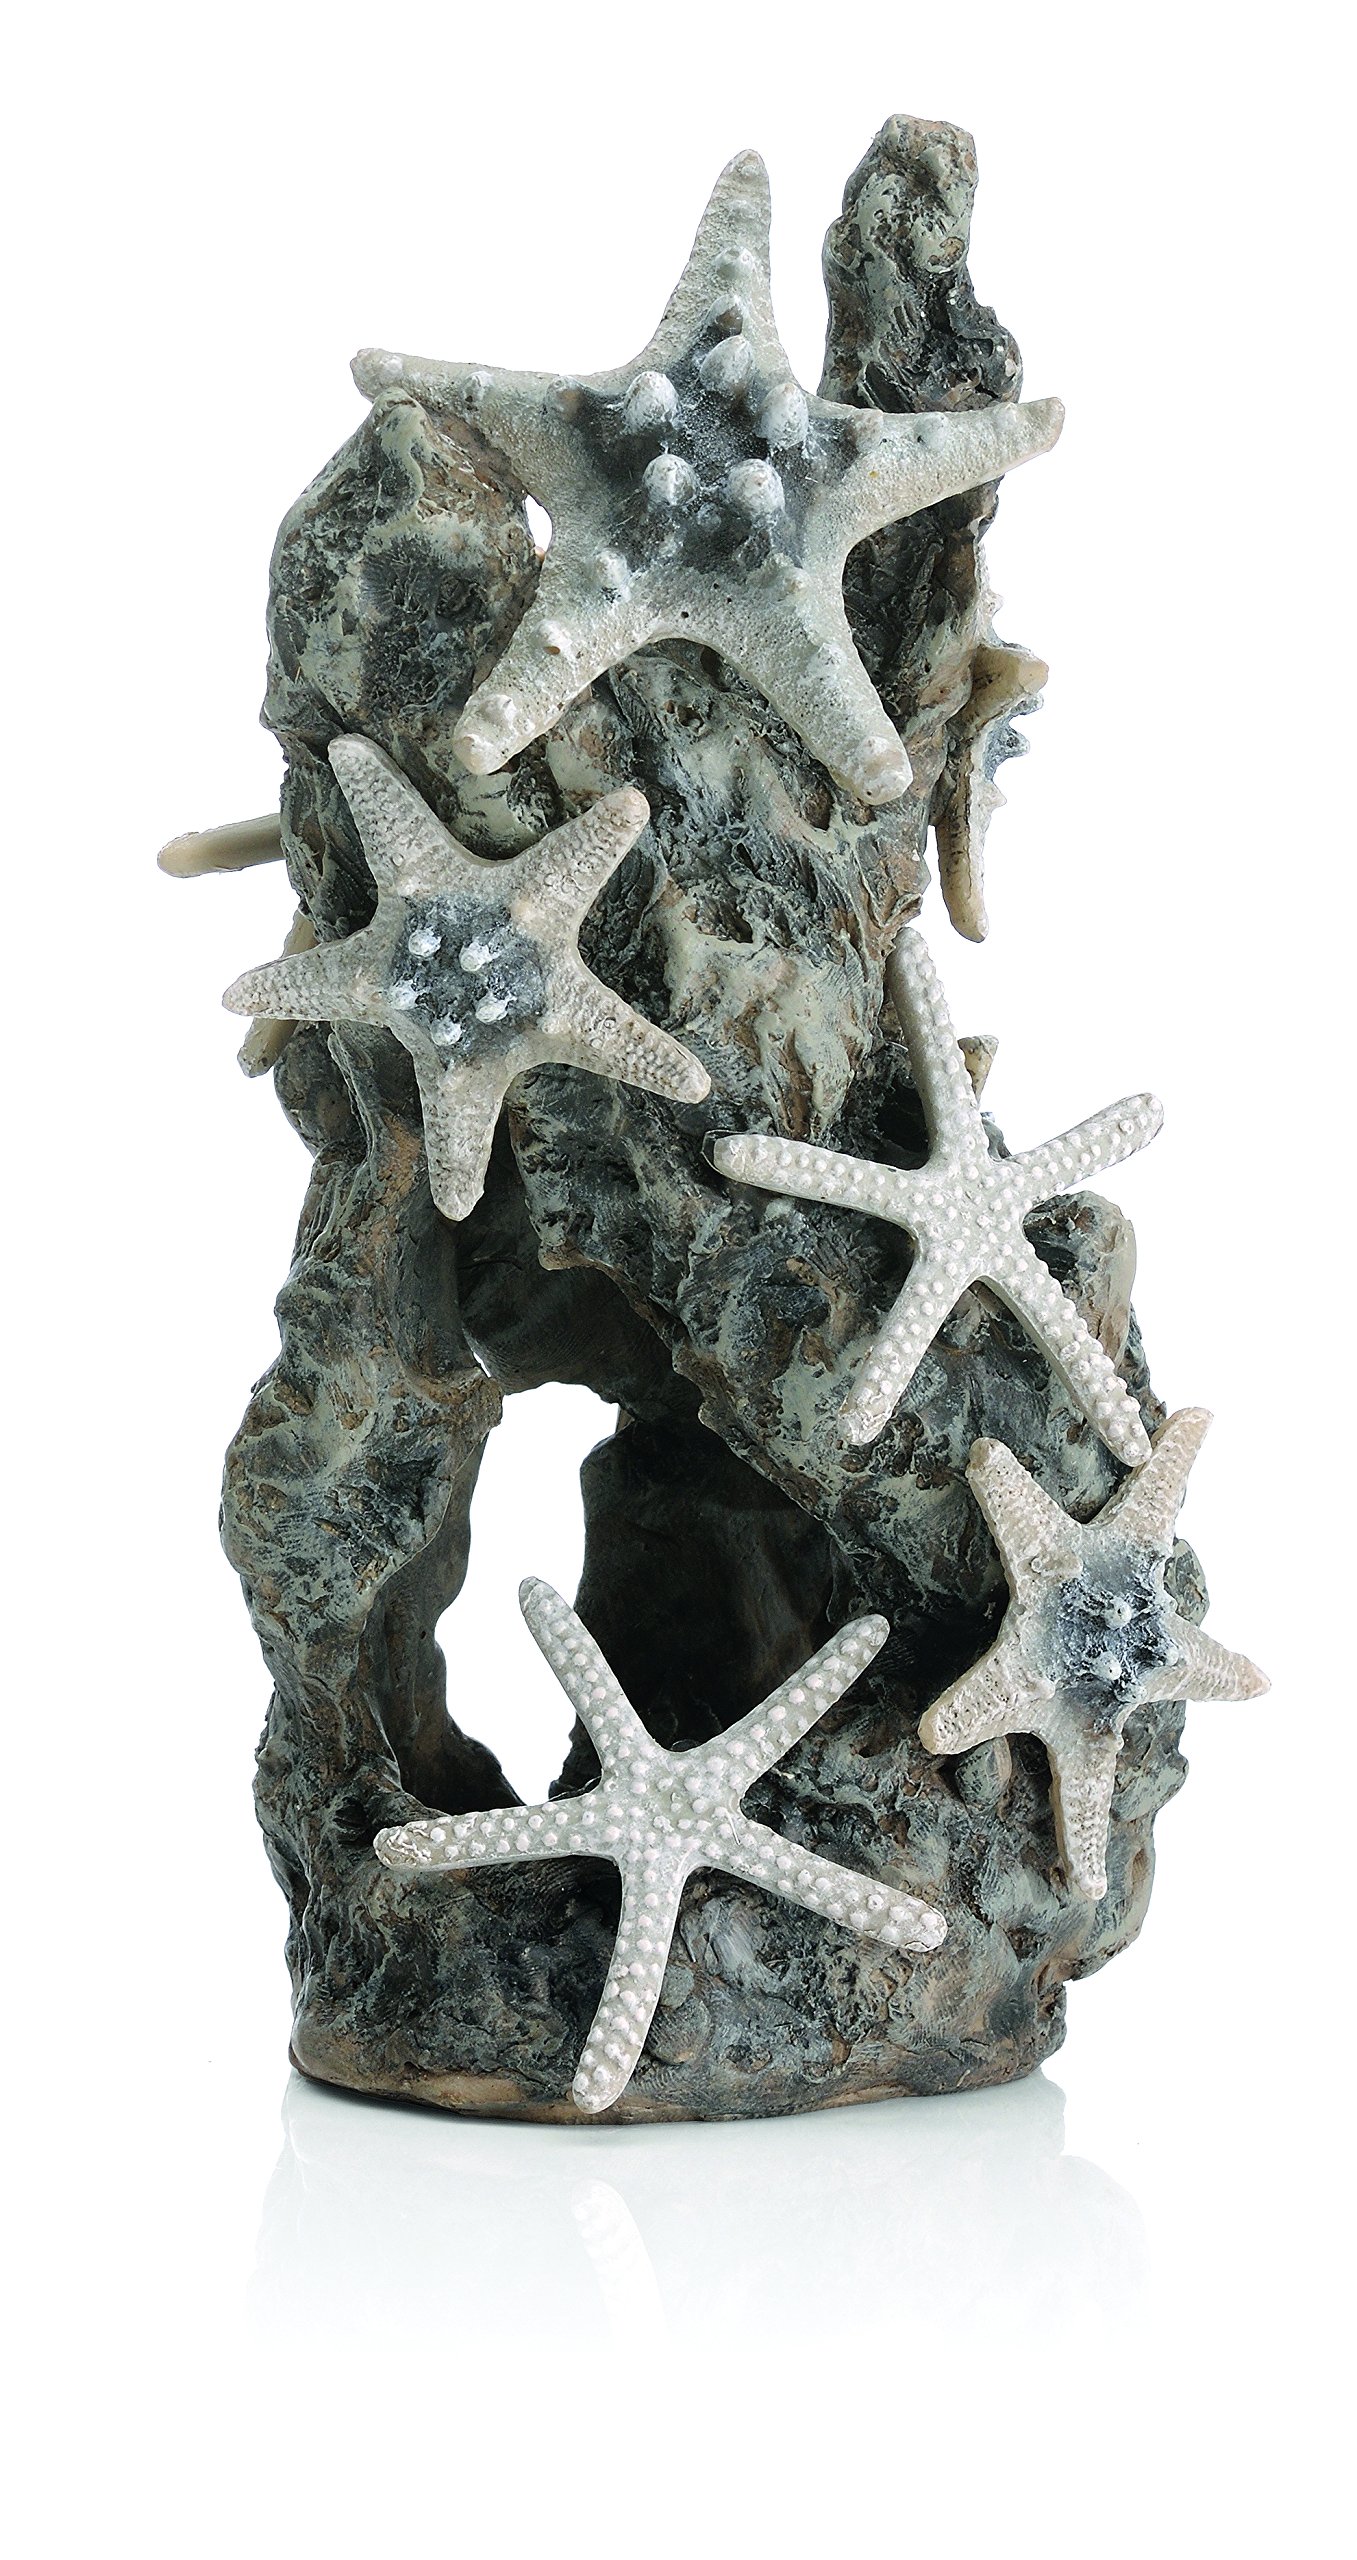 biOrb 46132 Seesternfelsen Ornament - detaillierte Aquariumdekoration in zur stilvollen Einrichtung von Süßwasser und Meerwasseraquarien – künstlicher Felsen als Versteck oder Höhle